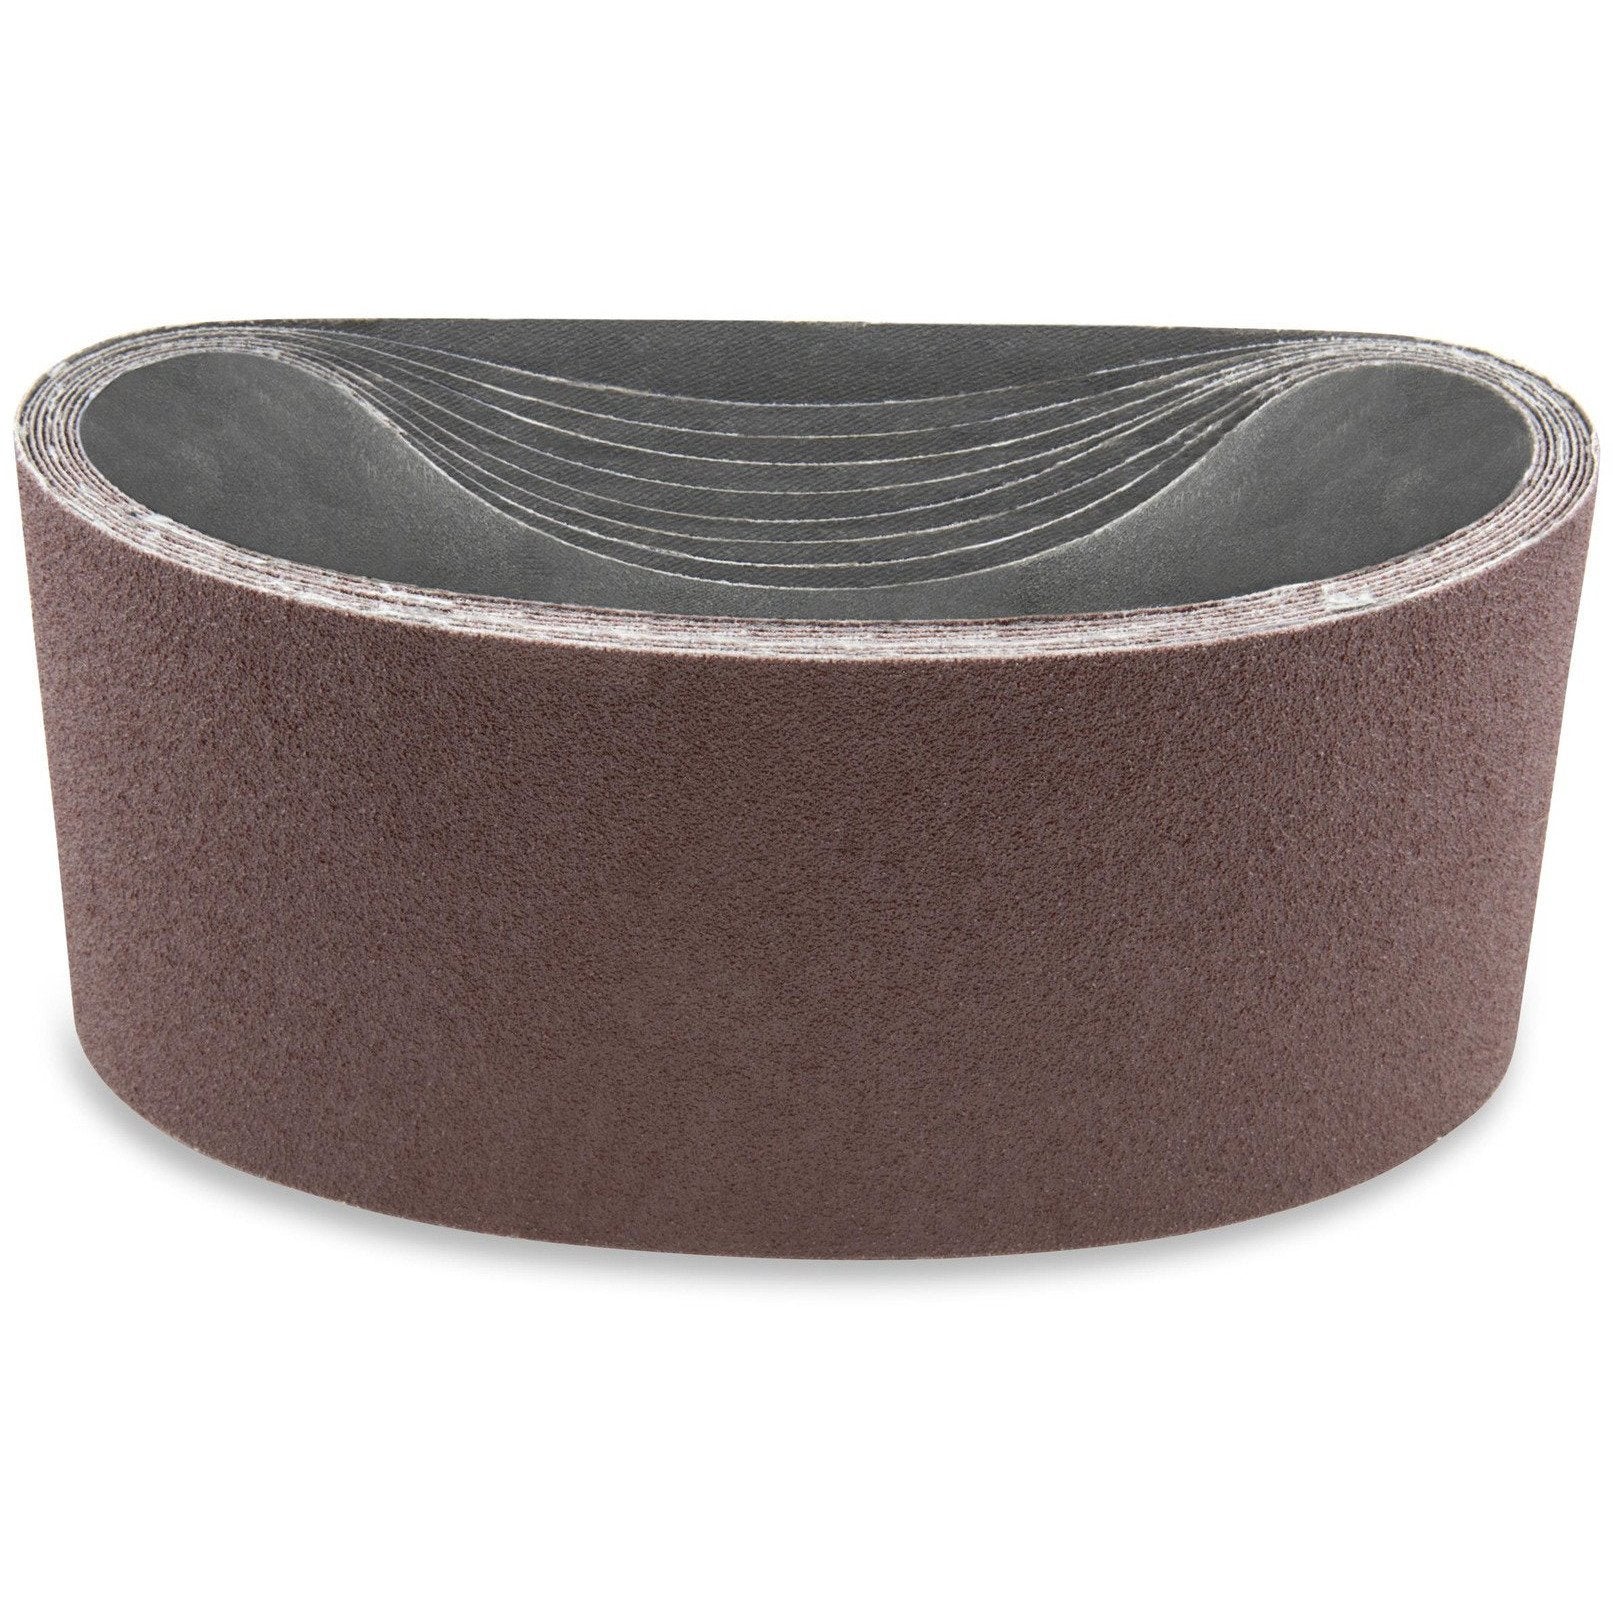 3 X 21 Inch Aluminum Oxide Sanding Belts, 8 Pack - Red Label Abrasives